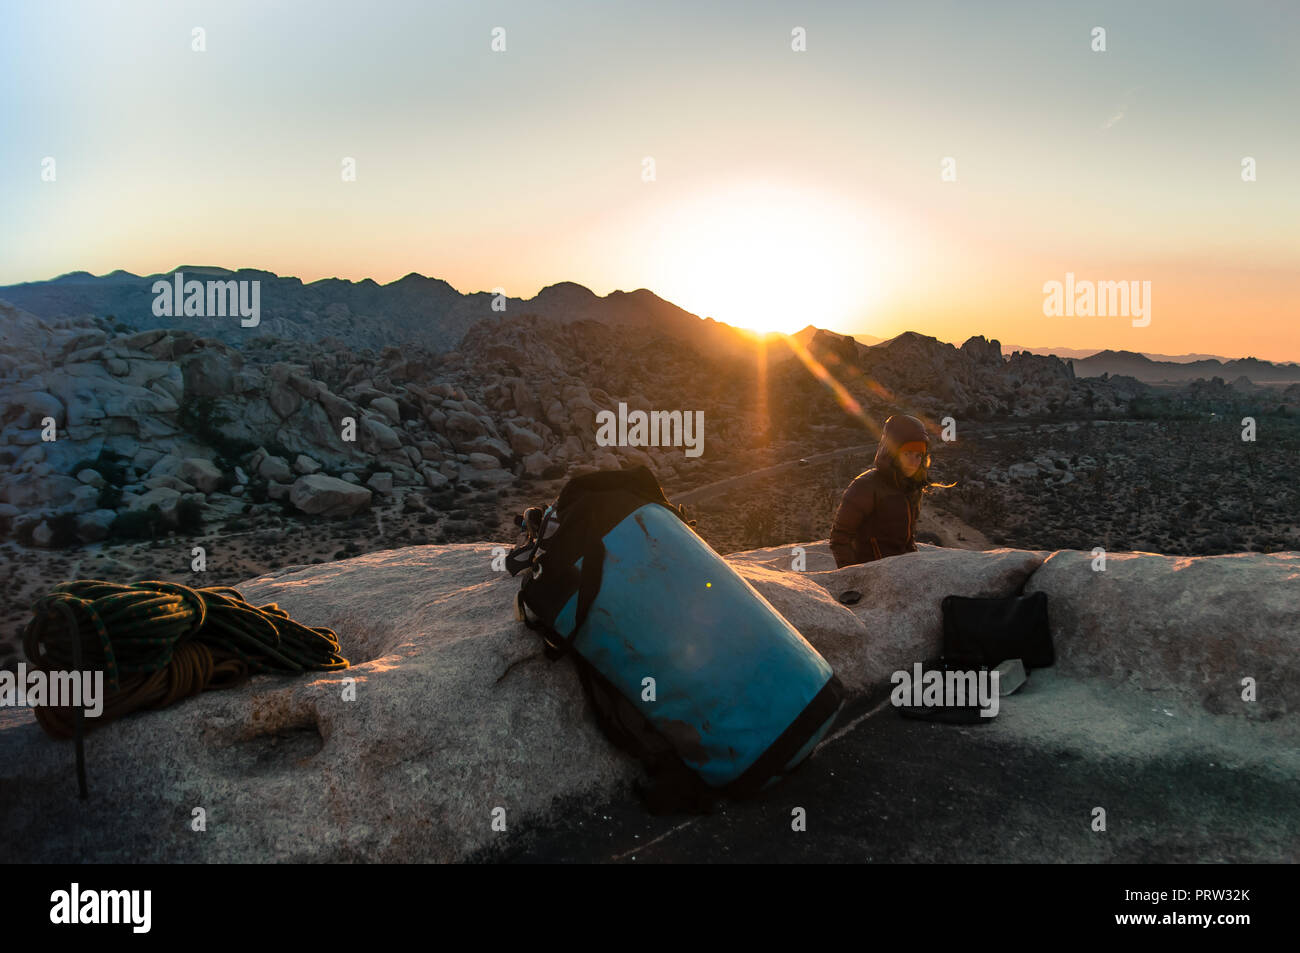 Alpiniste au sommet au coucher du soleil, Joshua Tree, California, USA Banque D'Images